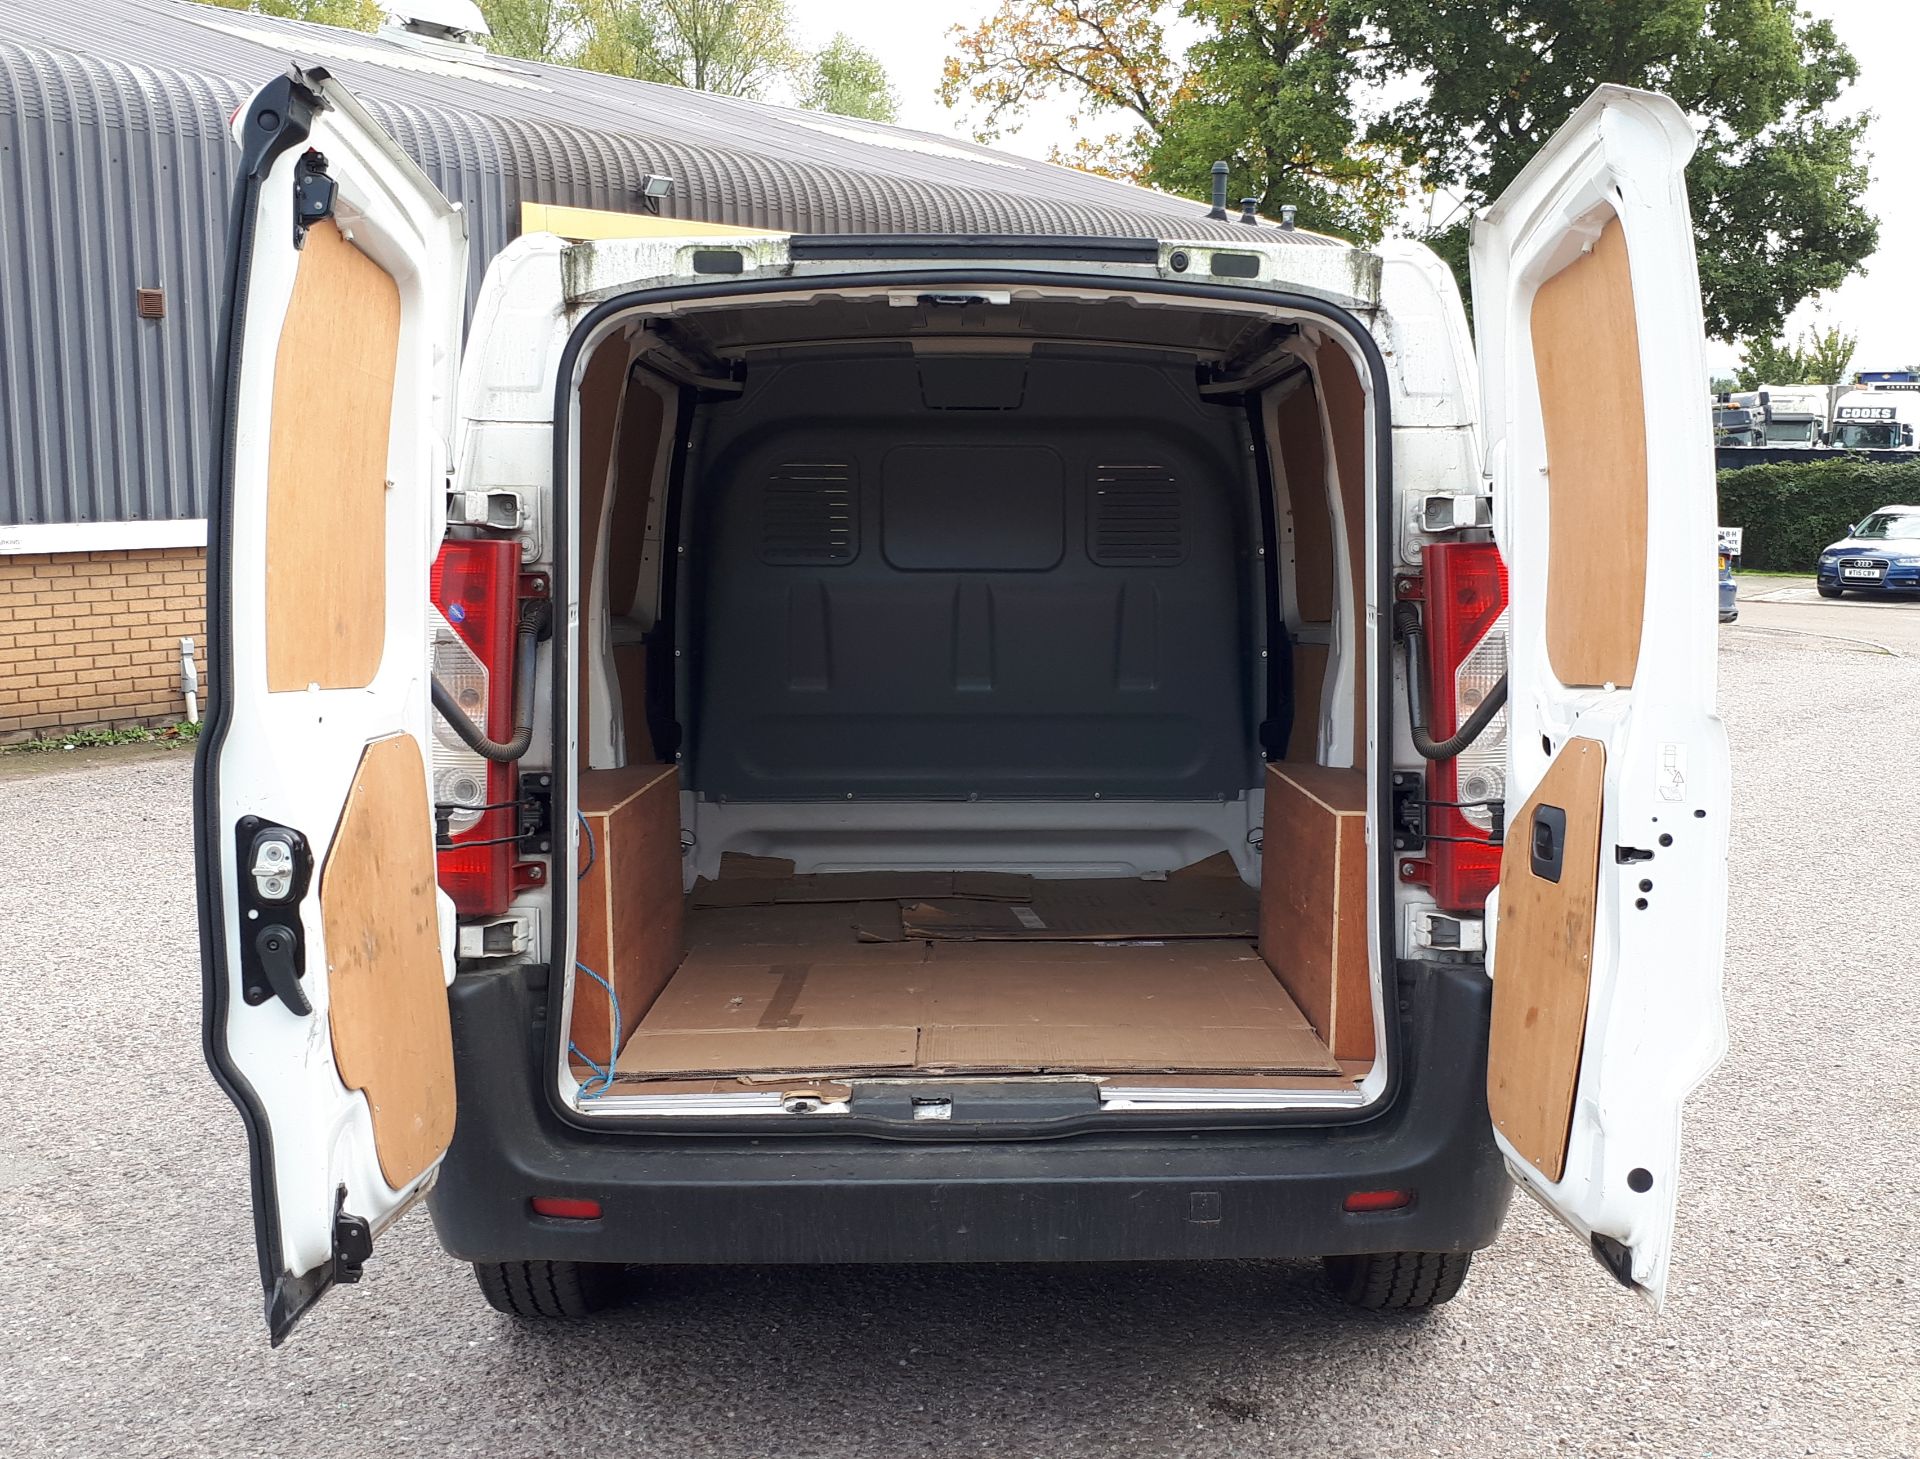 Peugeot Expert 1100 LIH1 HDI Panel Van, Registrati - Image 13 of 15